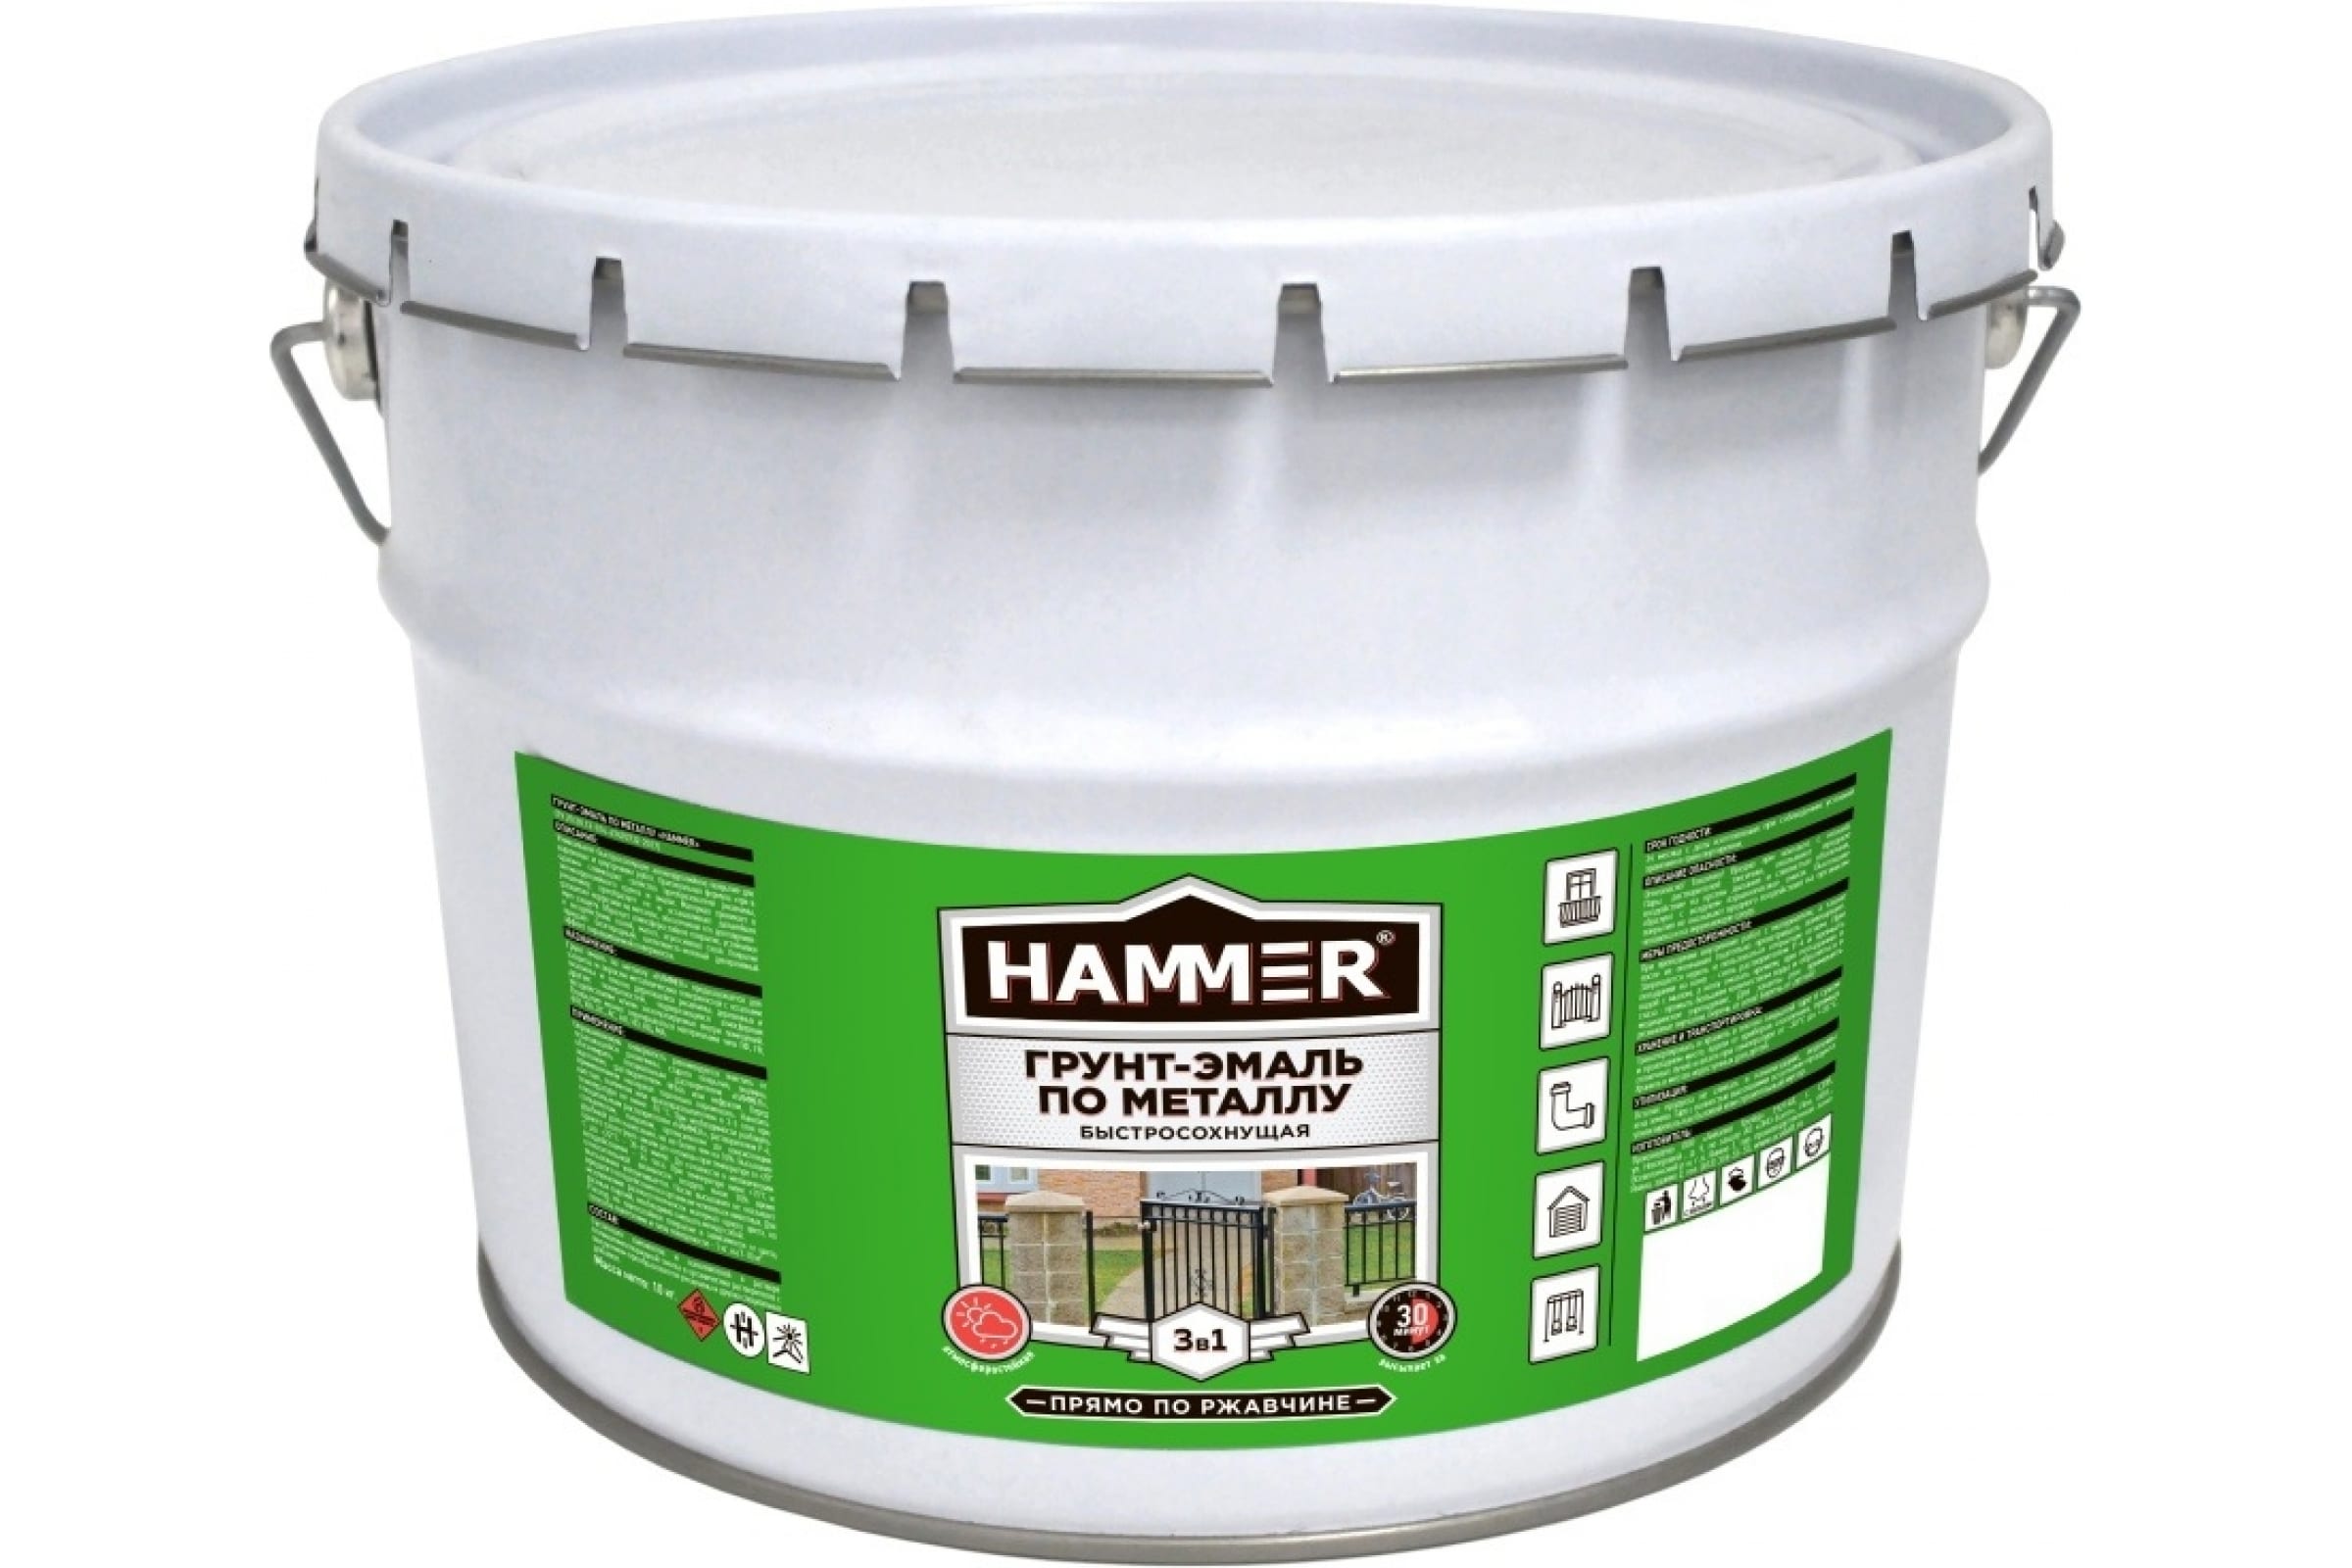 HAMMER Грунт-эмаль по металлу 3 в 1 б/с светло-серая 10 кг / 1 ЭК000131401